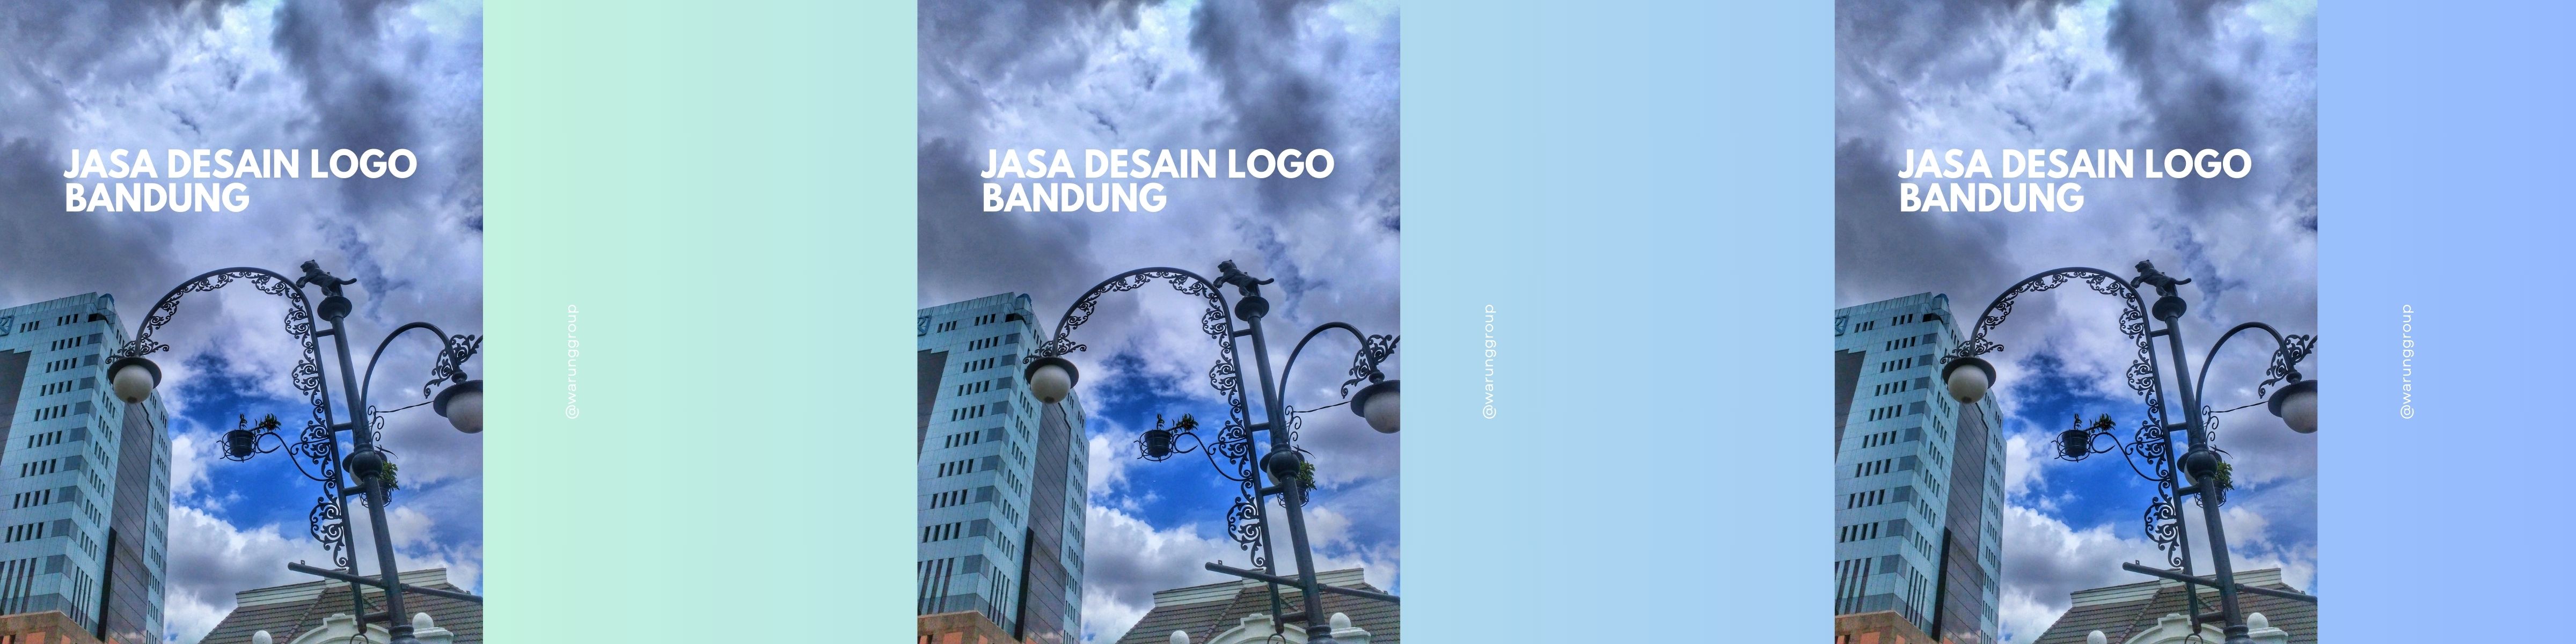 Jasa Desain Logo Bandung